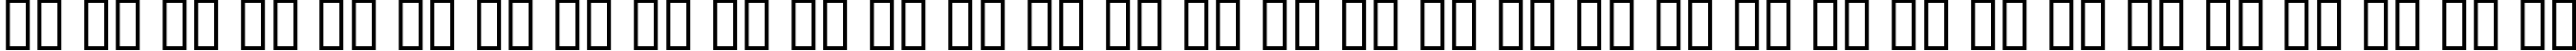 Пример написания русского алфавита шрифтом Elgethy Est Upper Condensed